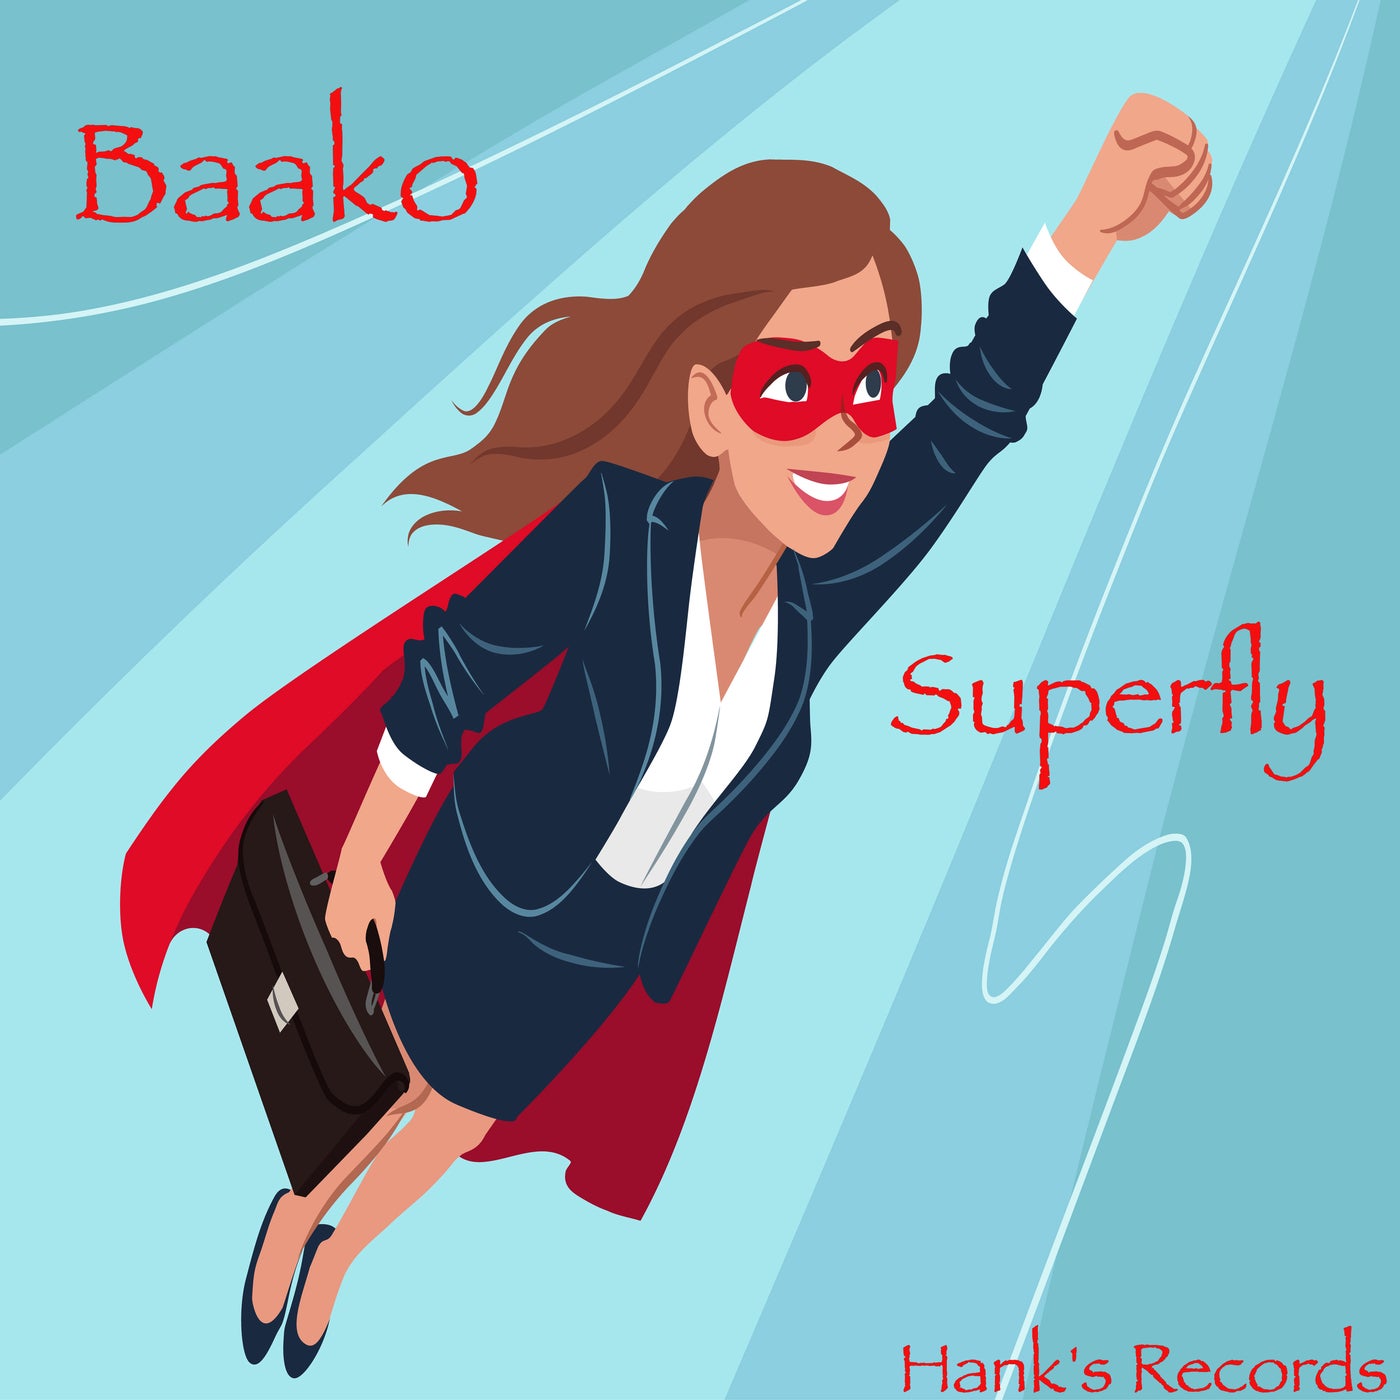 baako - Superfly [Hank's Records]